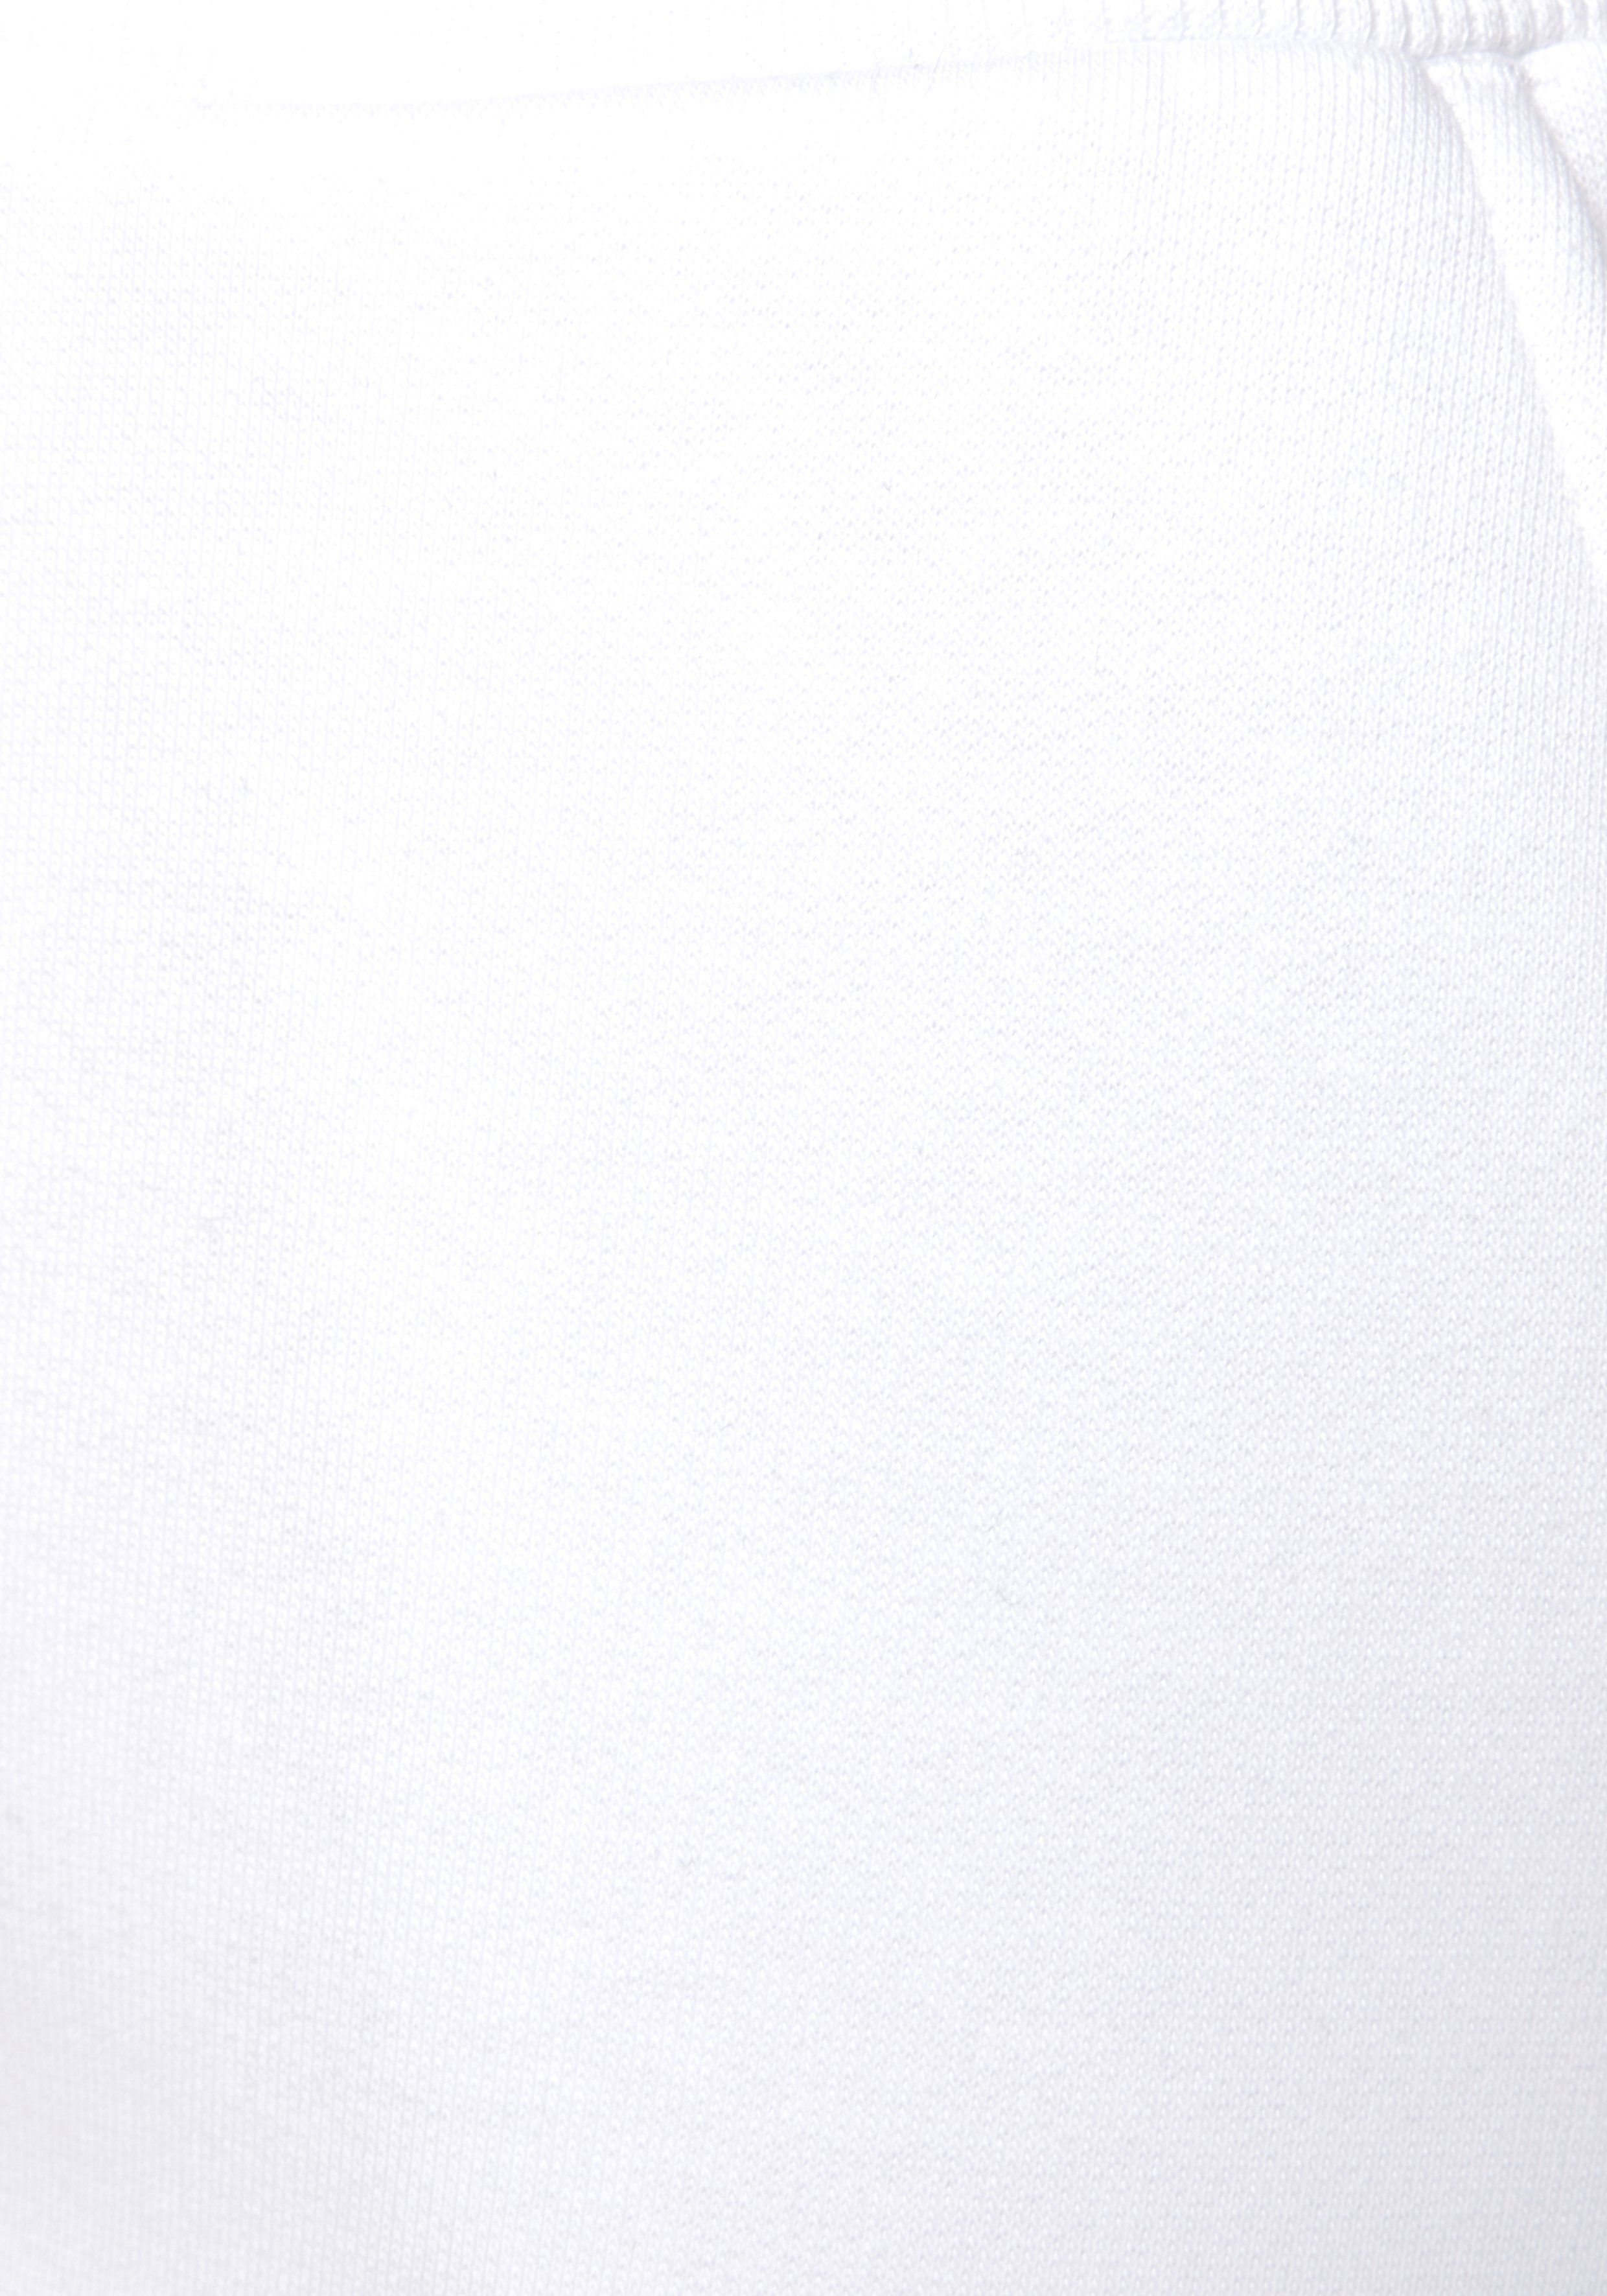 Relaxhose mit und Bändern Bench. Loungeanzug bedruckten Streifen, white seitlichen